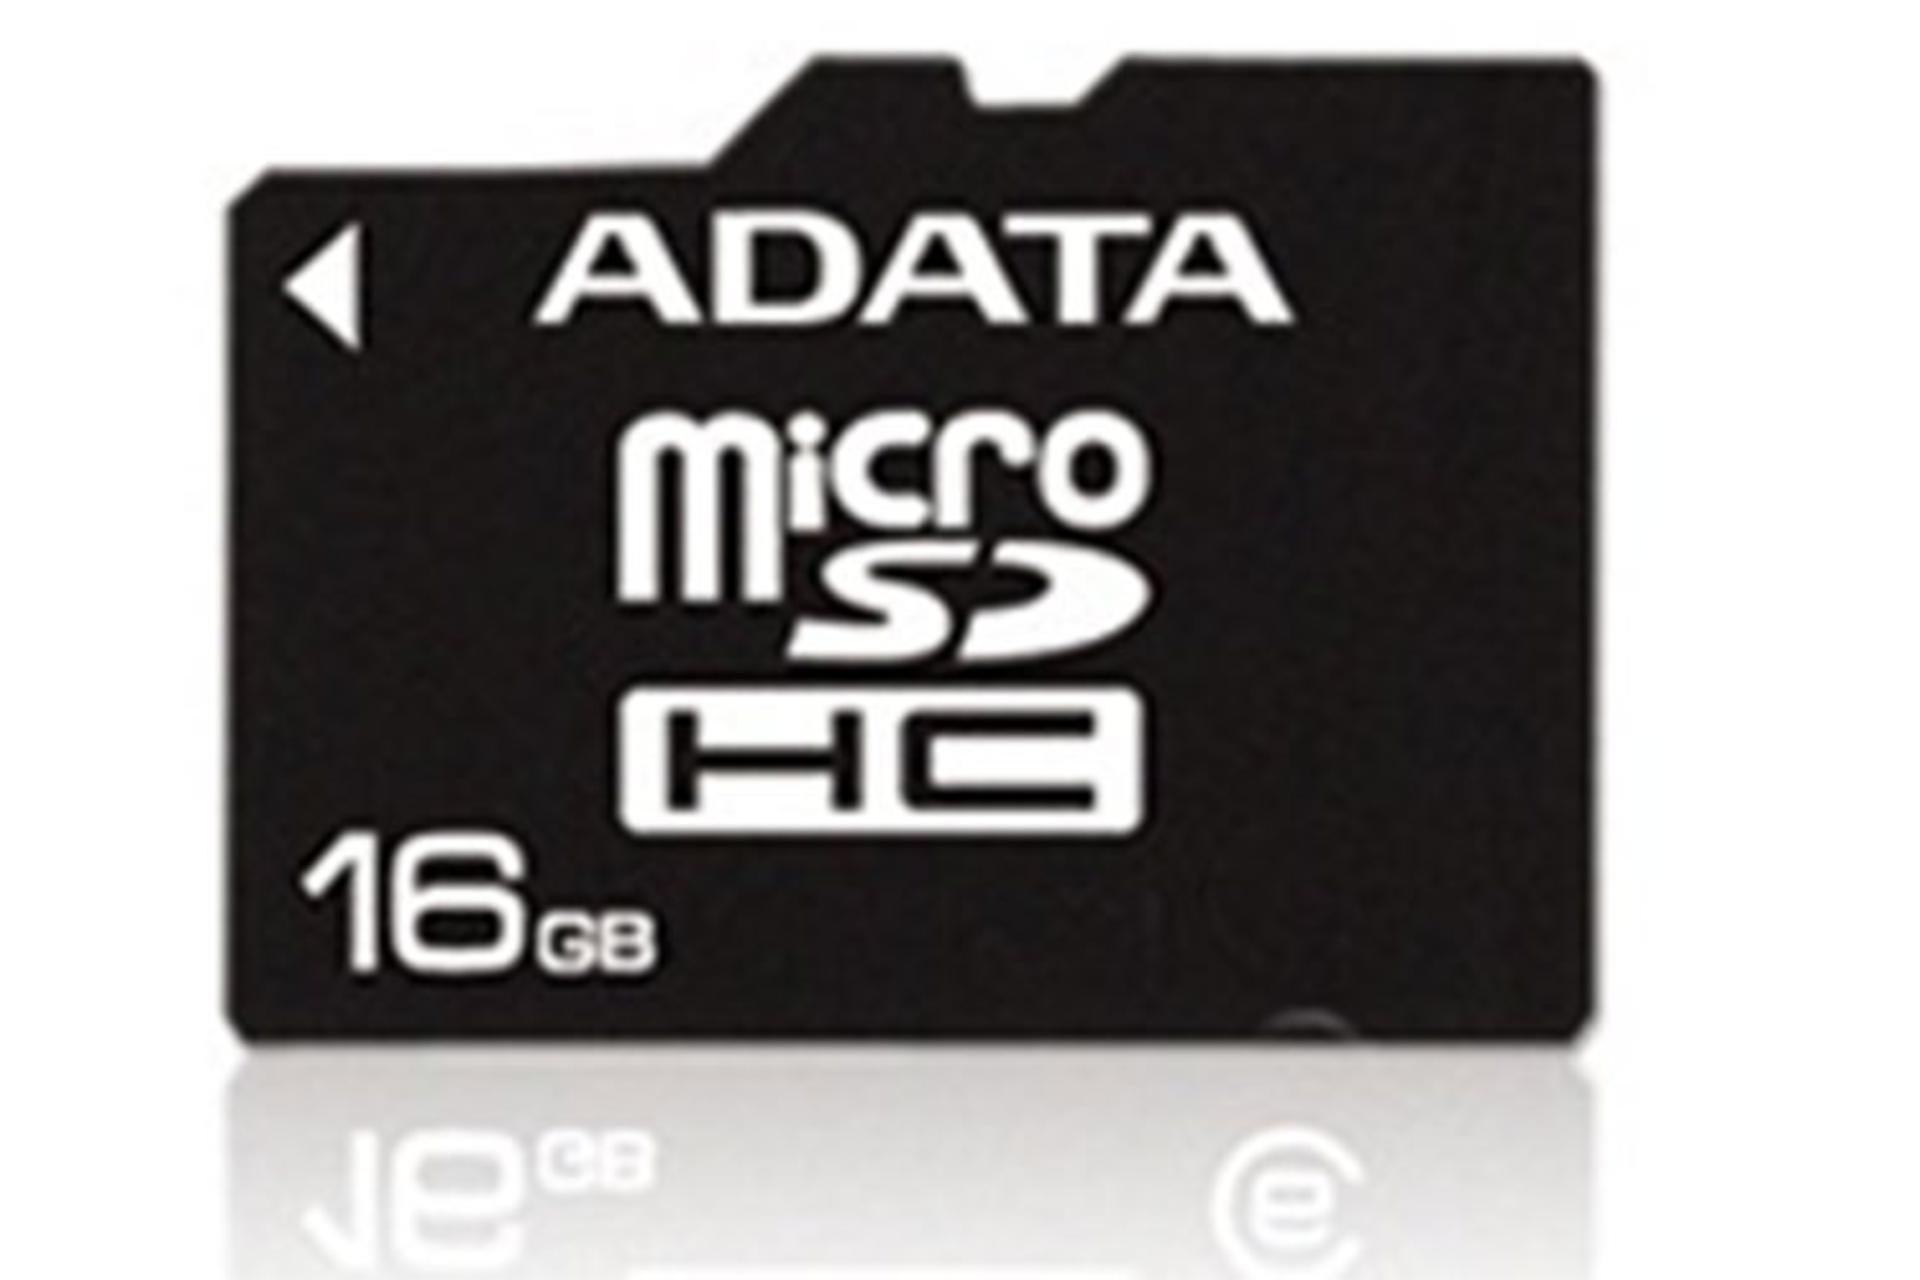 مرجع متخصصين ايران ADATA microSDHC Class 2 16GB